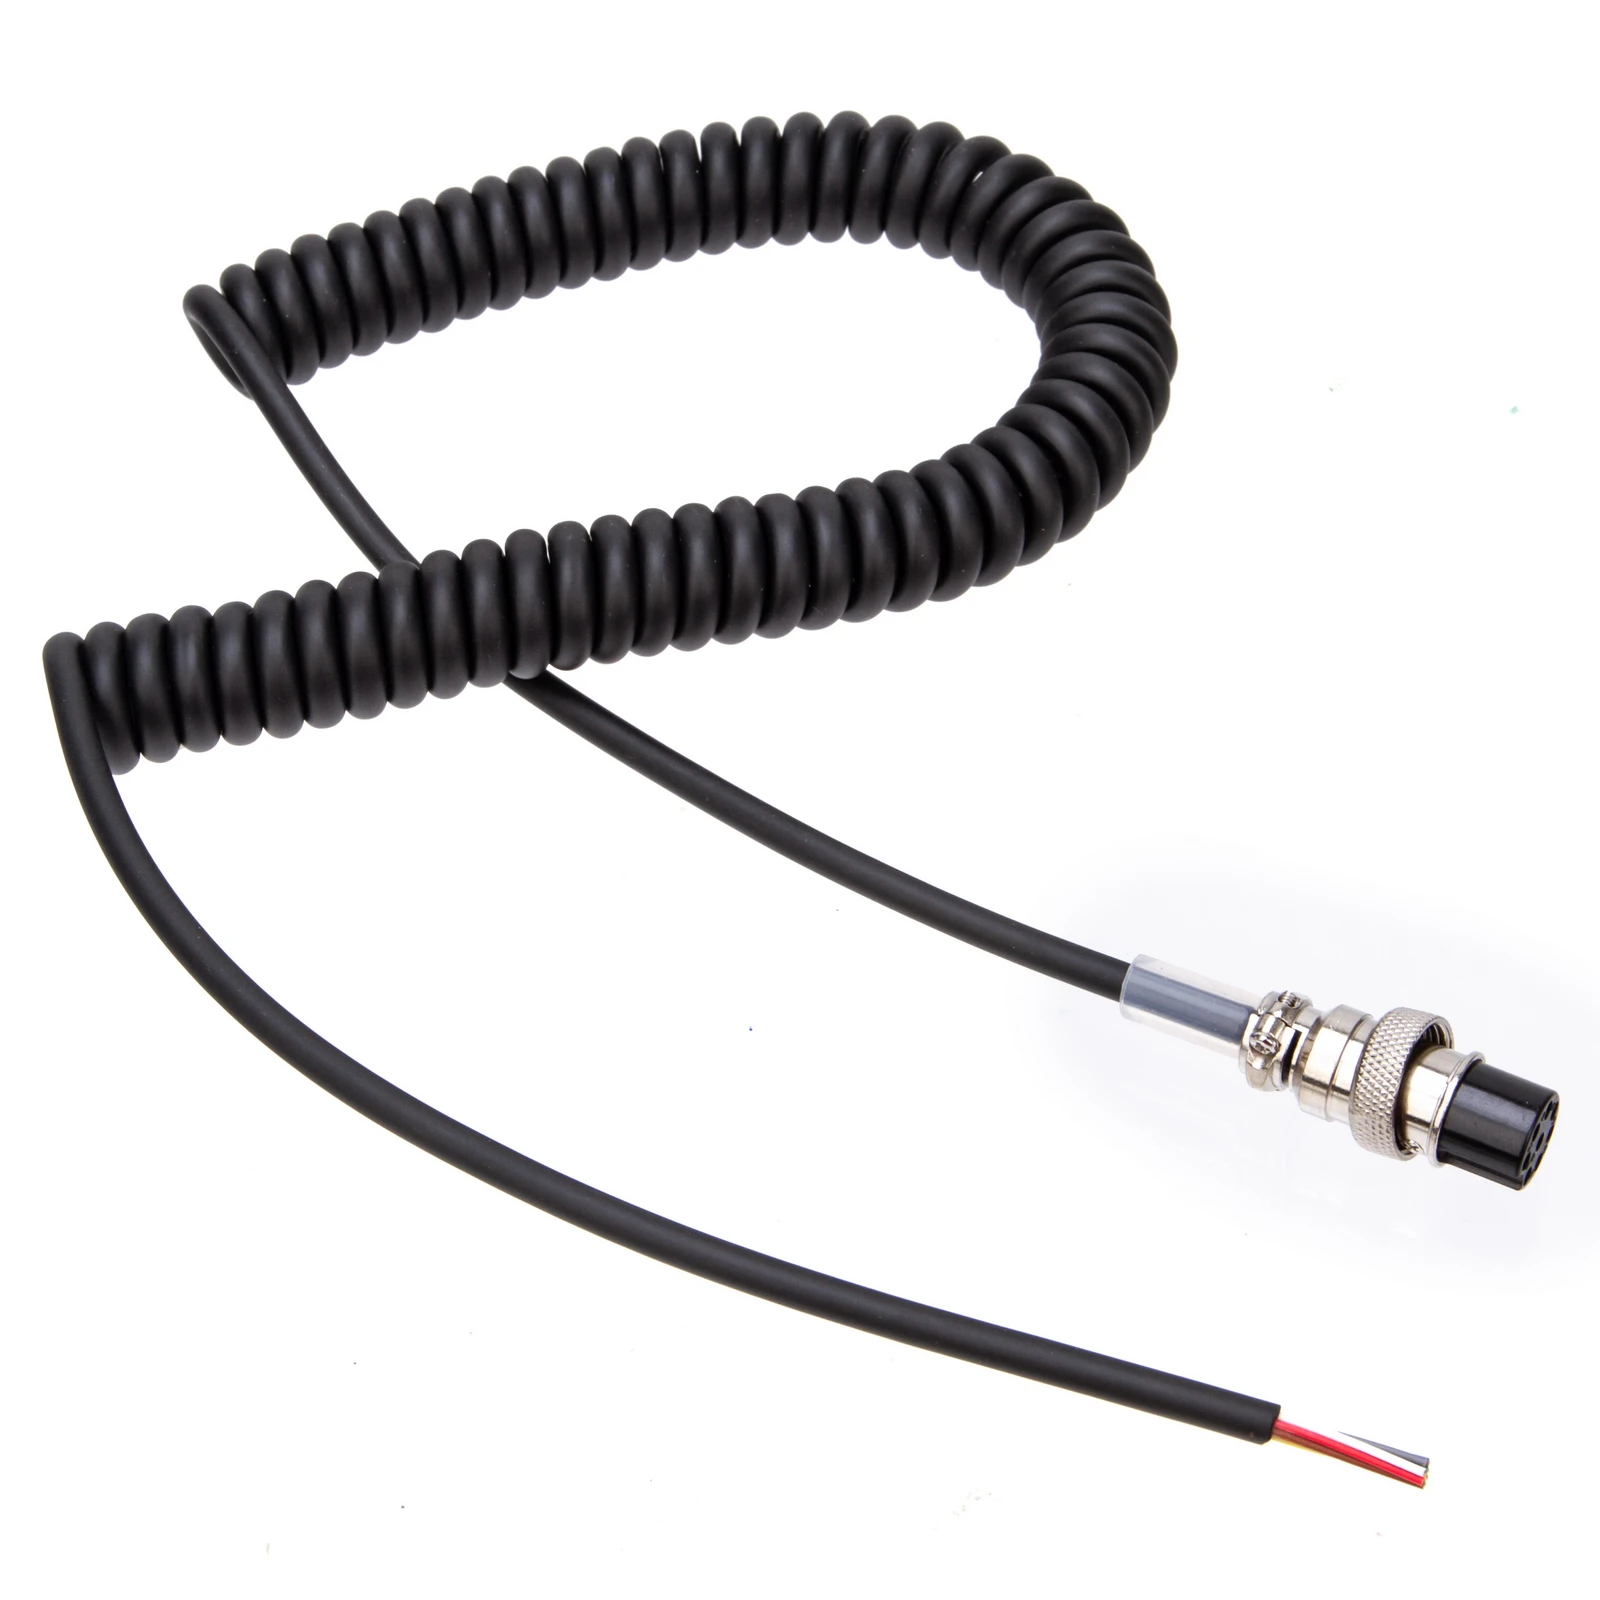 Ручной микрофон Ridao для динамика, микрофон, полиуретановый кабель, шнур для радиостанции Alinco EMS-57 DR635 DR620 DR435, рация